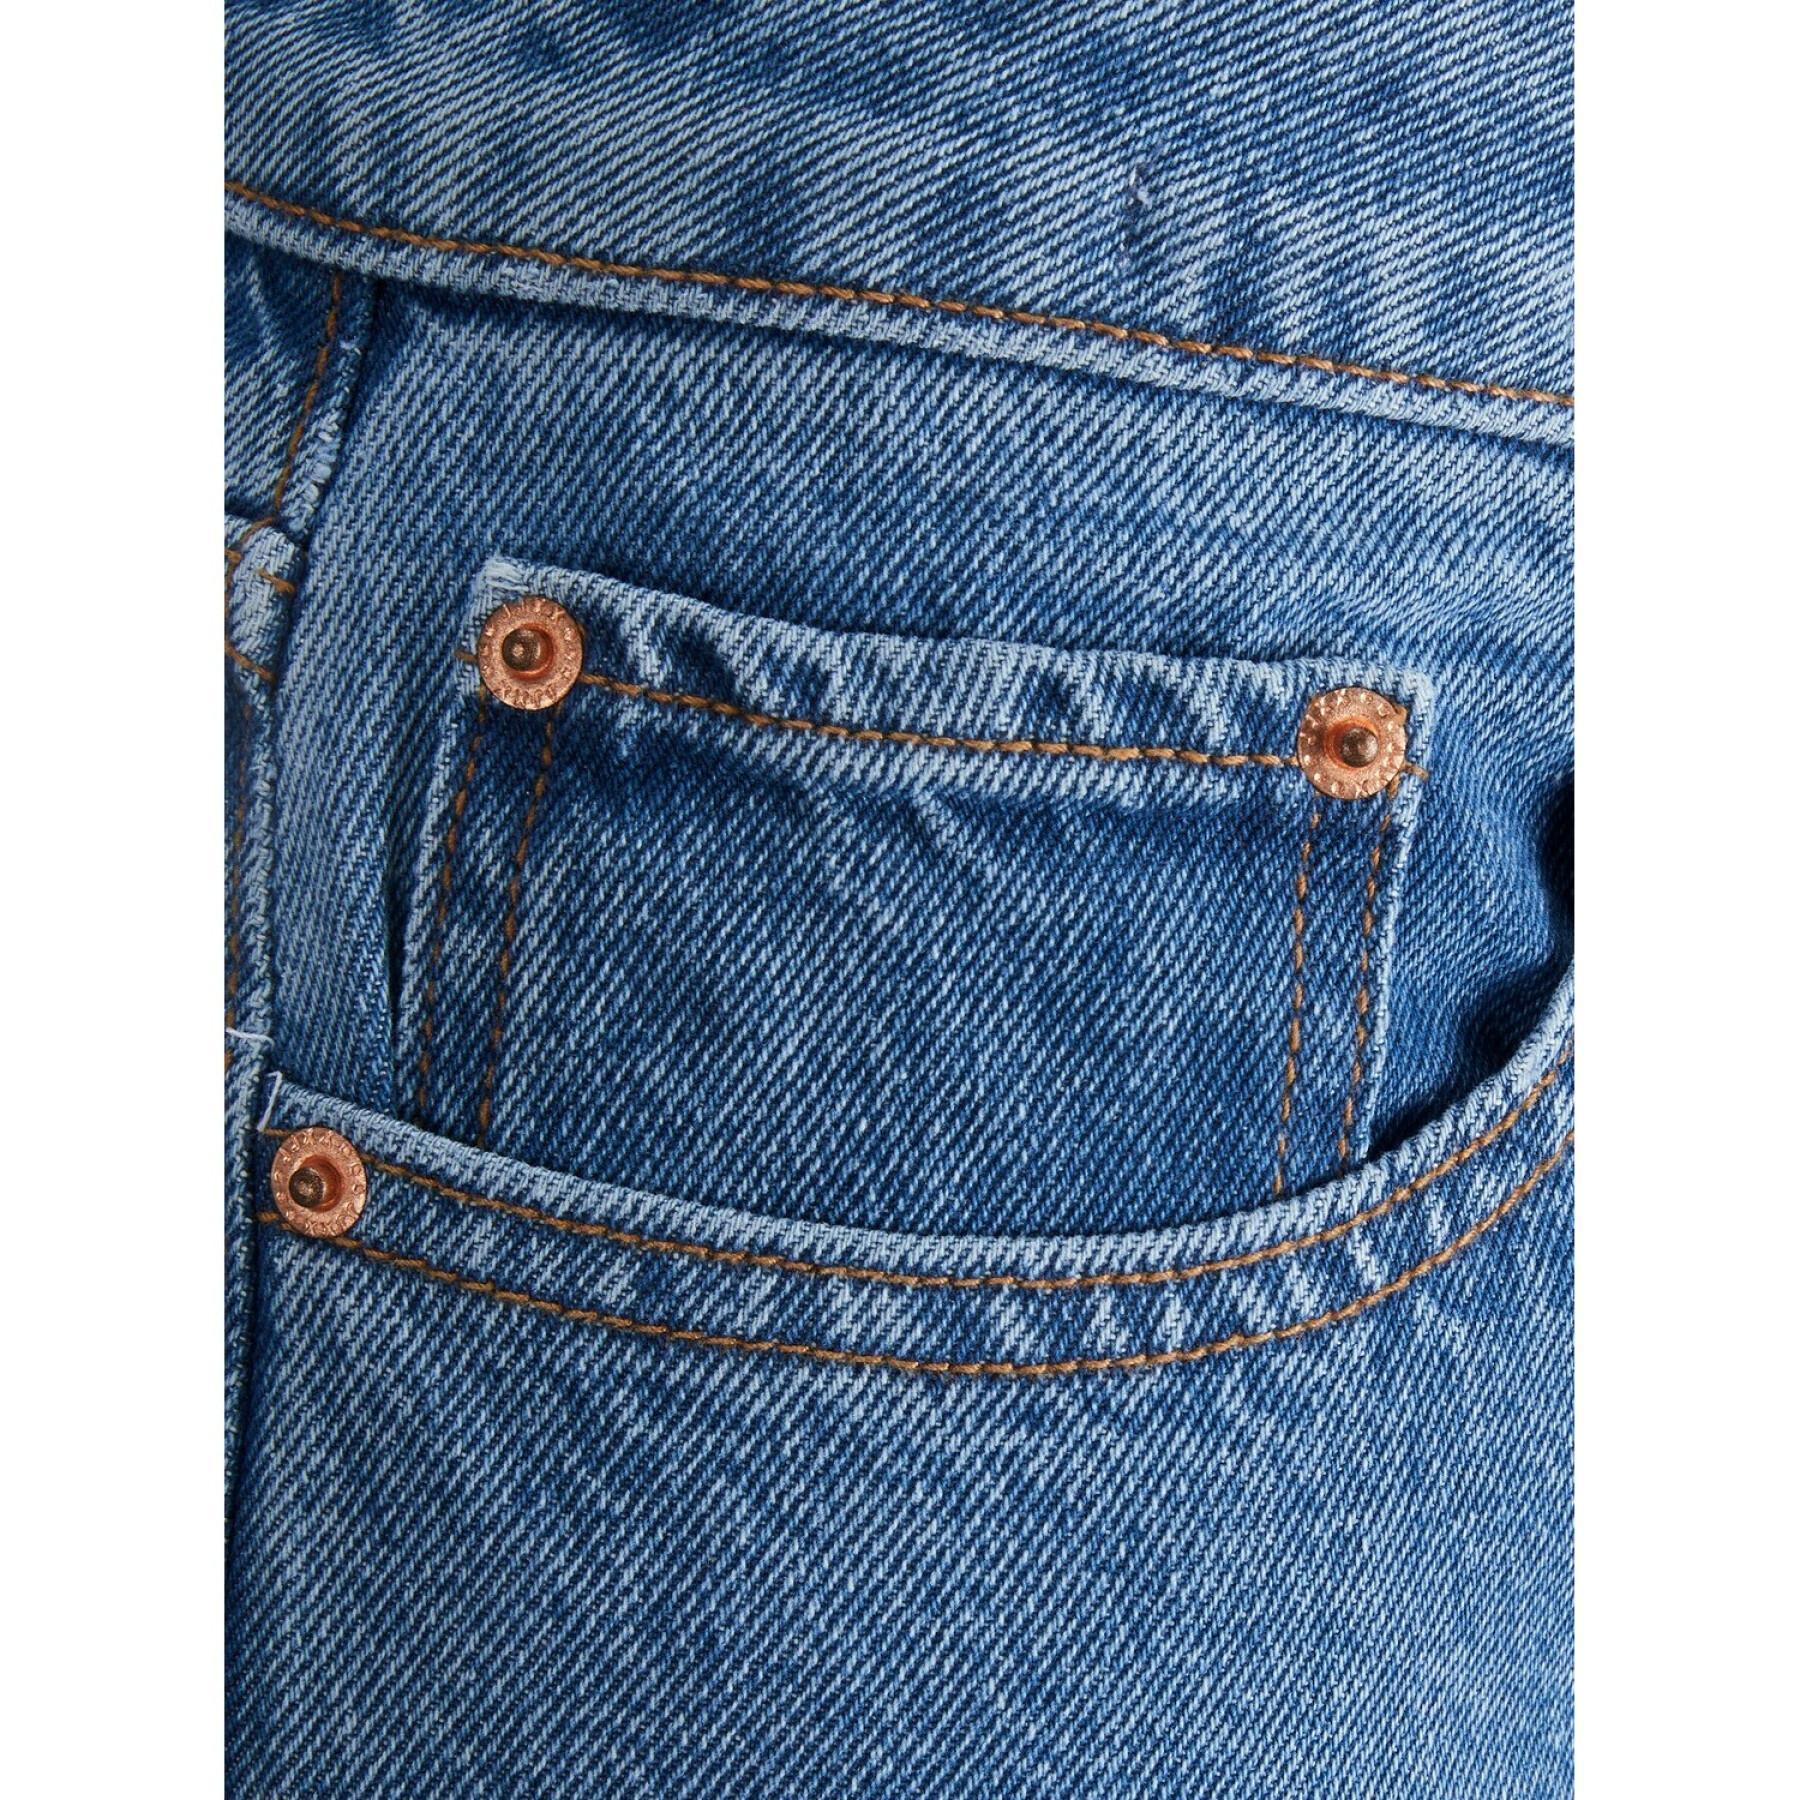 Jeans da donna JJXX tokyo wide nr6002